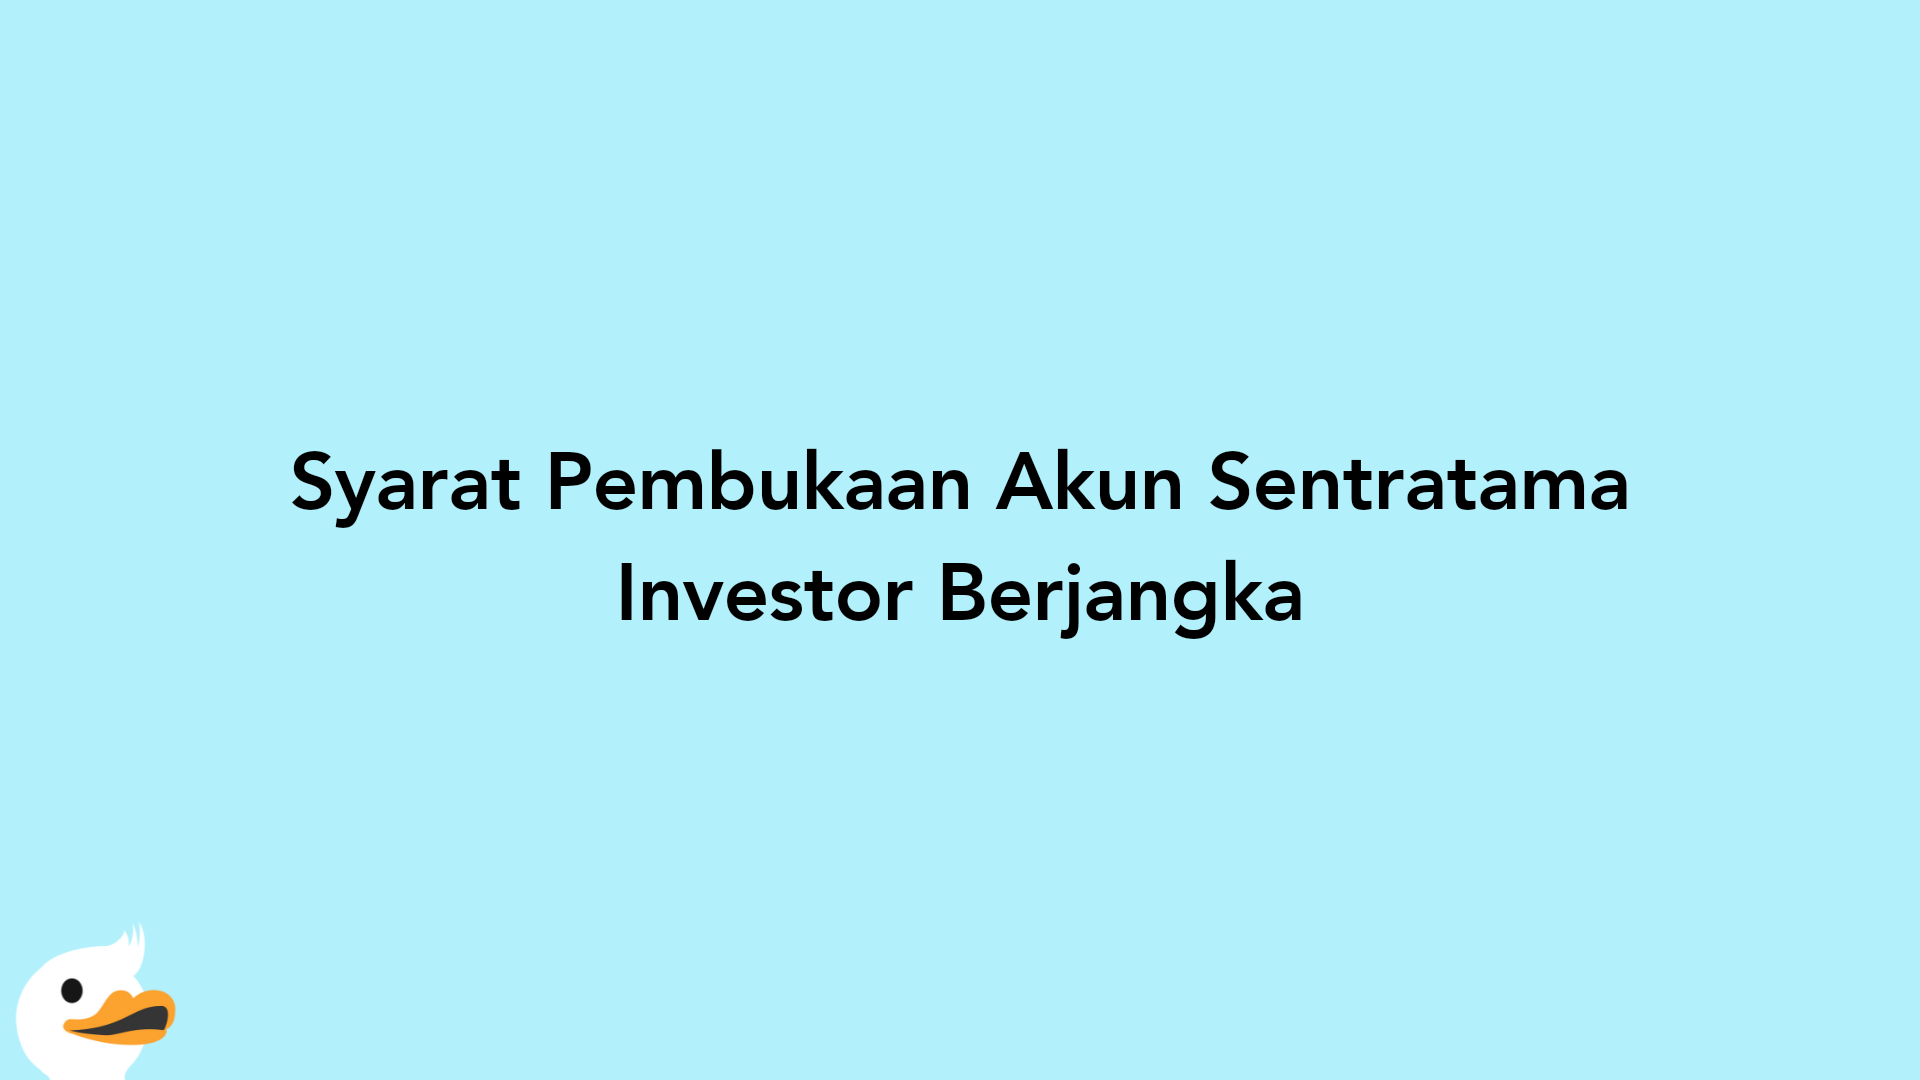 Syarat Pembukaan Akun Sentratama Investor Berjangka